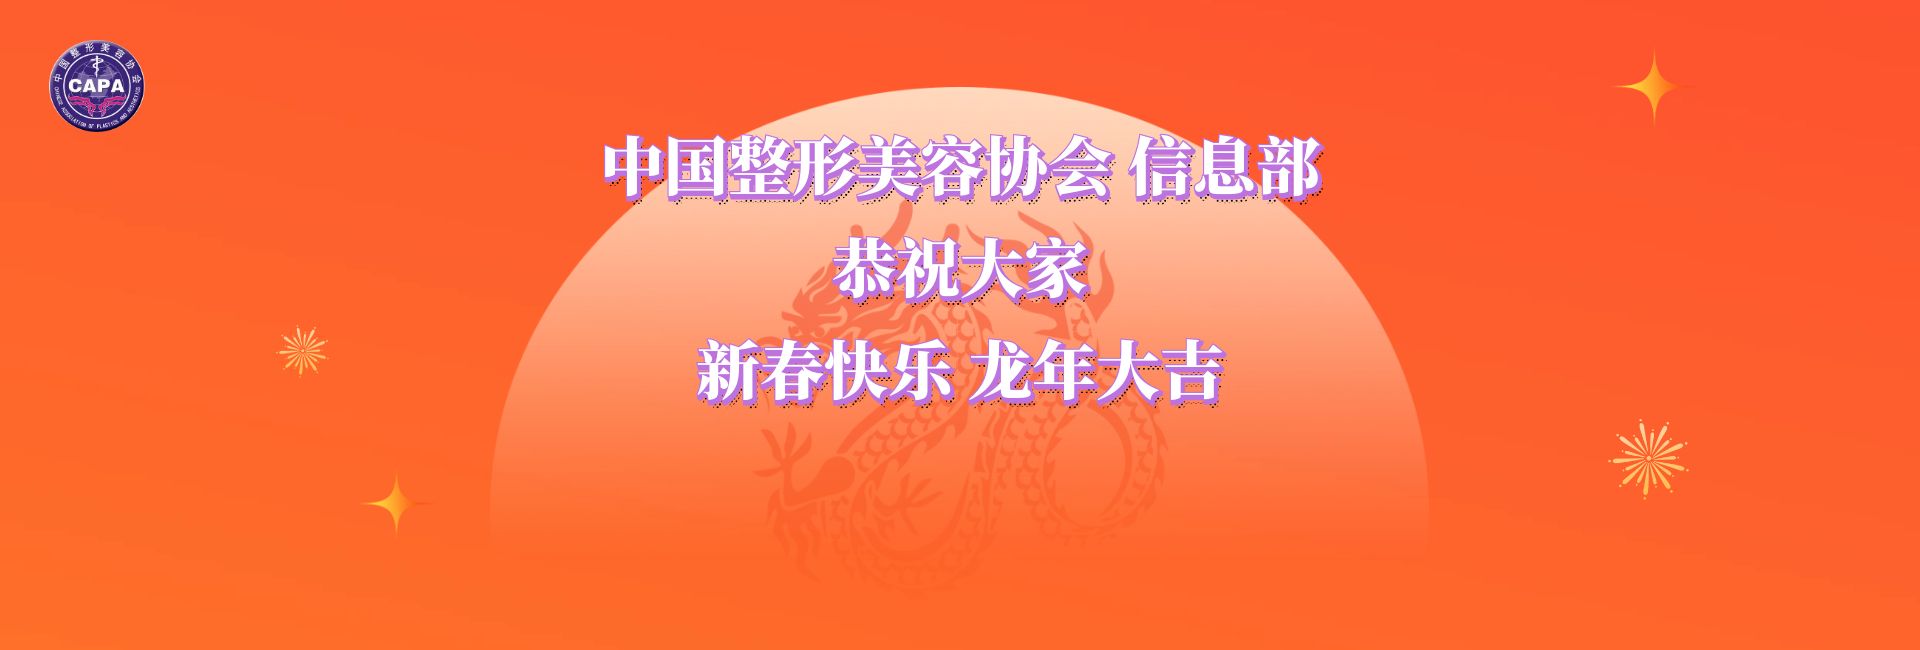 中国整形美容协会信息部恭祝大家新春快乐，龙年大吉！